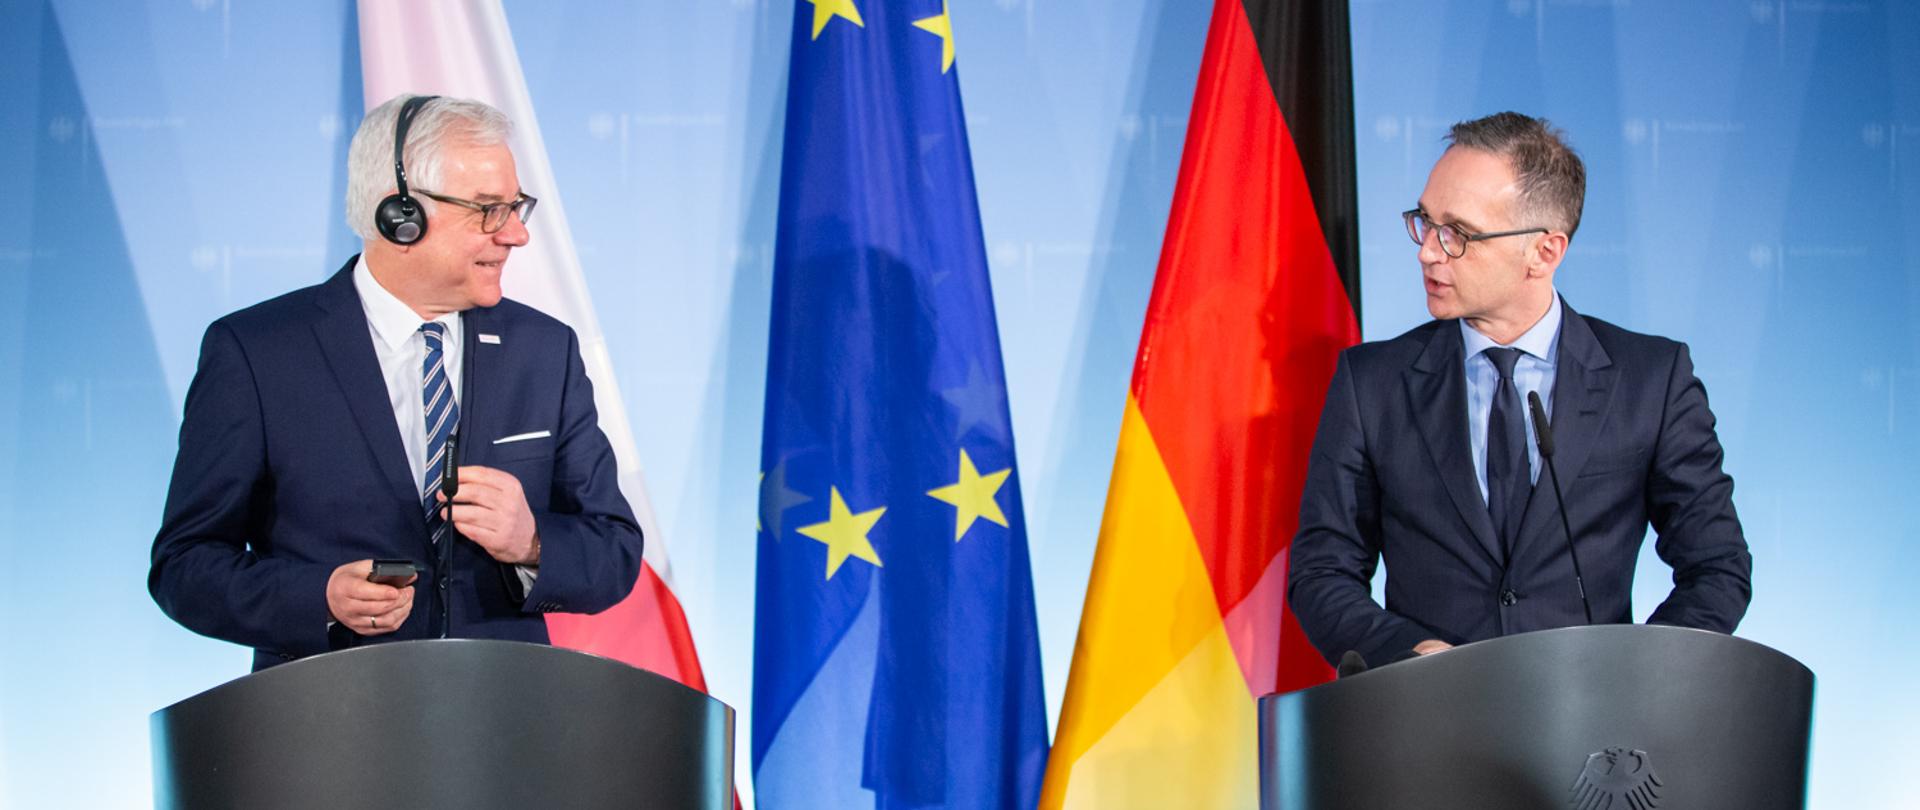 Minister Jacek Czaputowicz oraz minister Heiko Maas podczas wspólnej konferencji prasowej w Berlinie